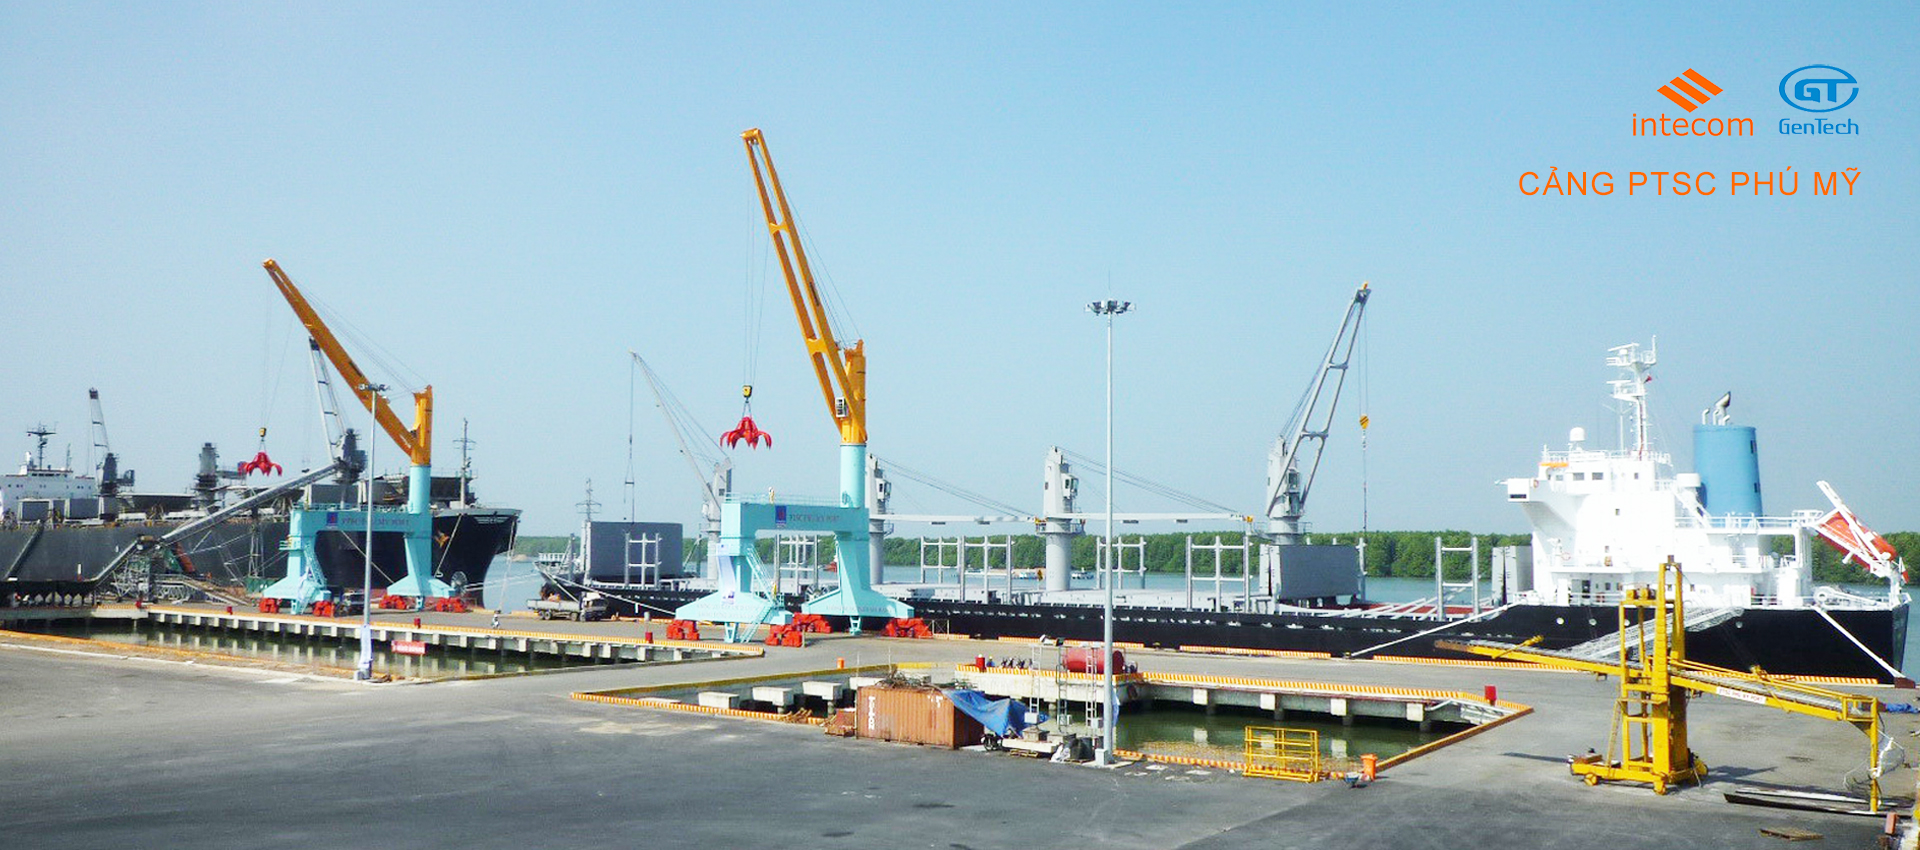 Khai thác hàng rời tại cảng PTSC Phú Mỹ